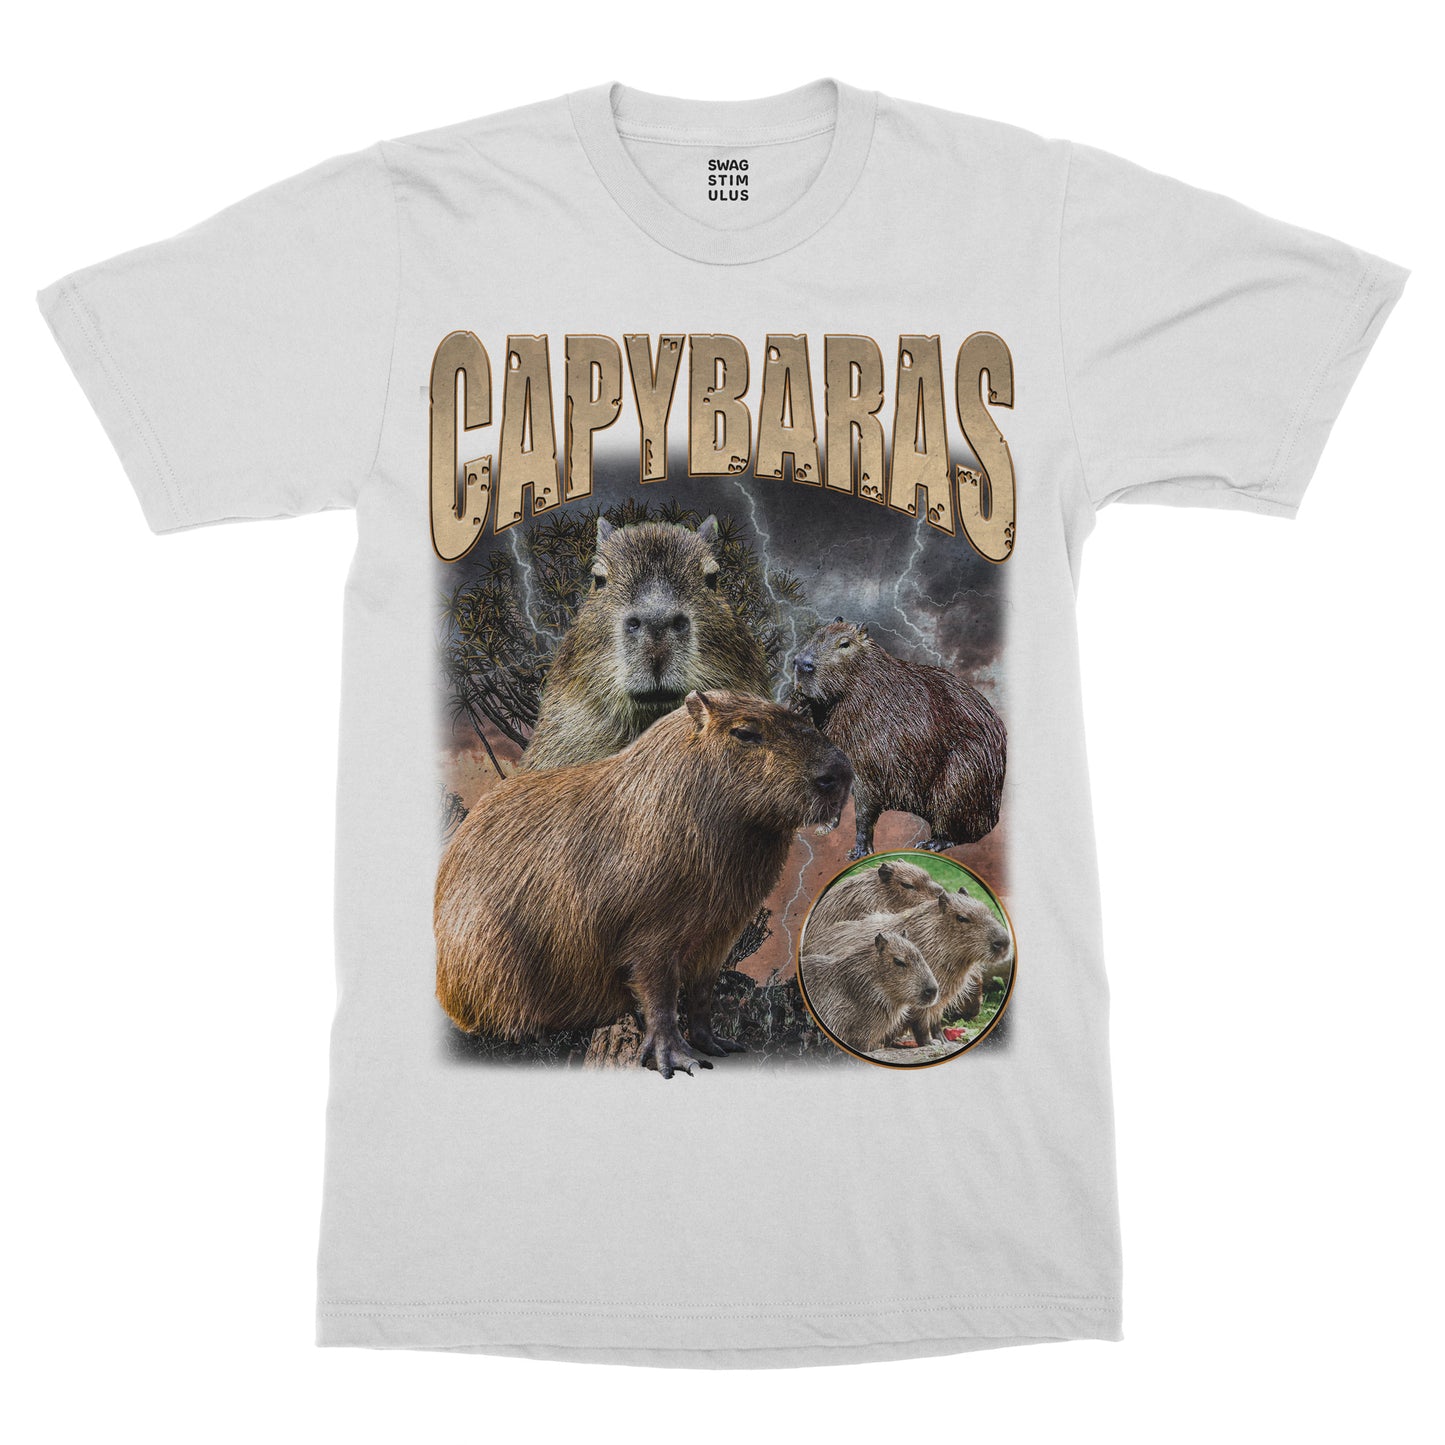 Capybara Band T-Shirt